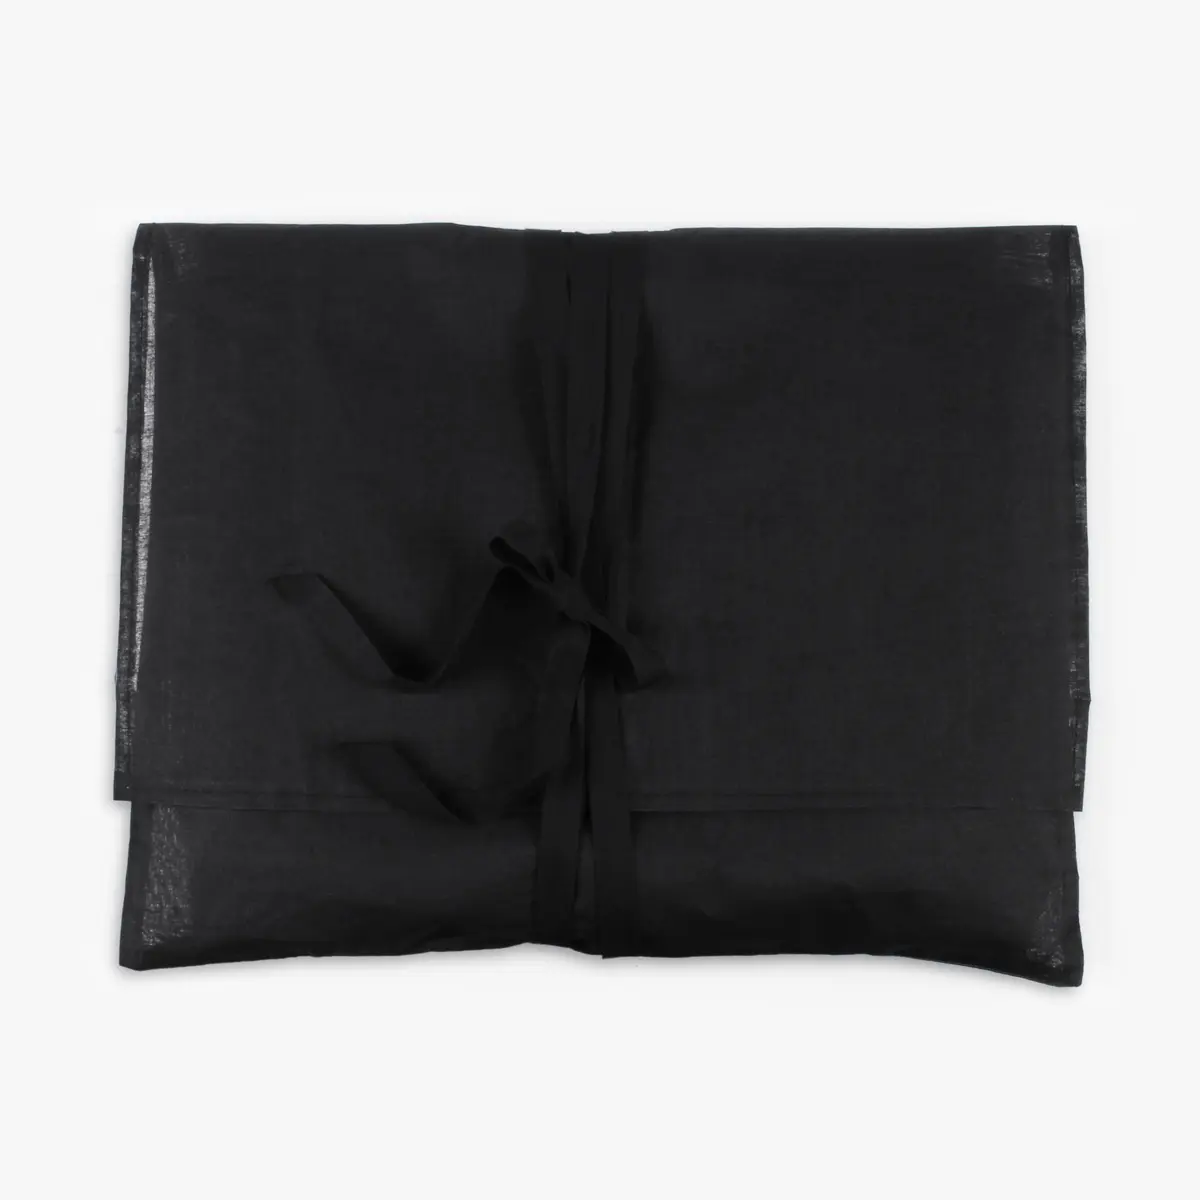 Yile Custom Natural Cotton Wieder verwendbare umwelt freundliche Portfolio-Tasche Umschlag Verpackung Staubbeutel Stoff Umschlag Tasche